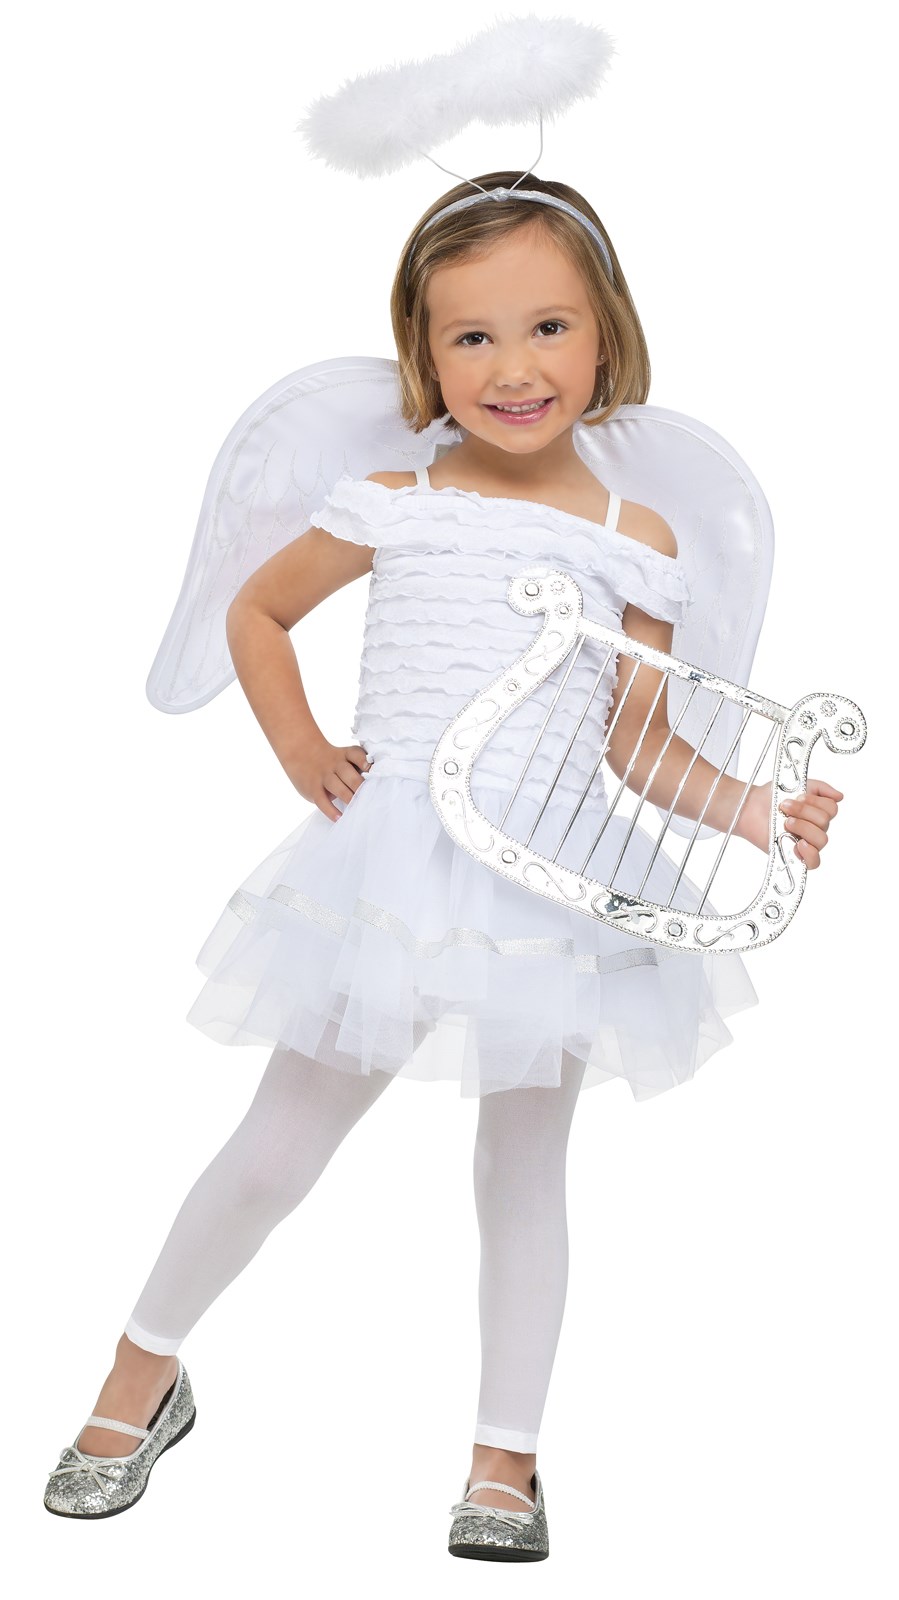 Little Angel Toddler Costume